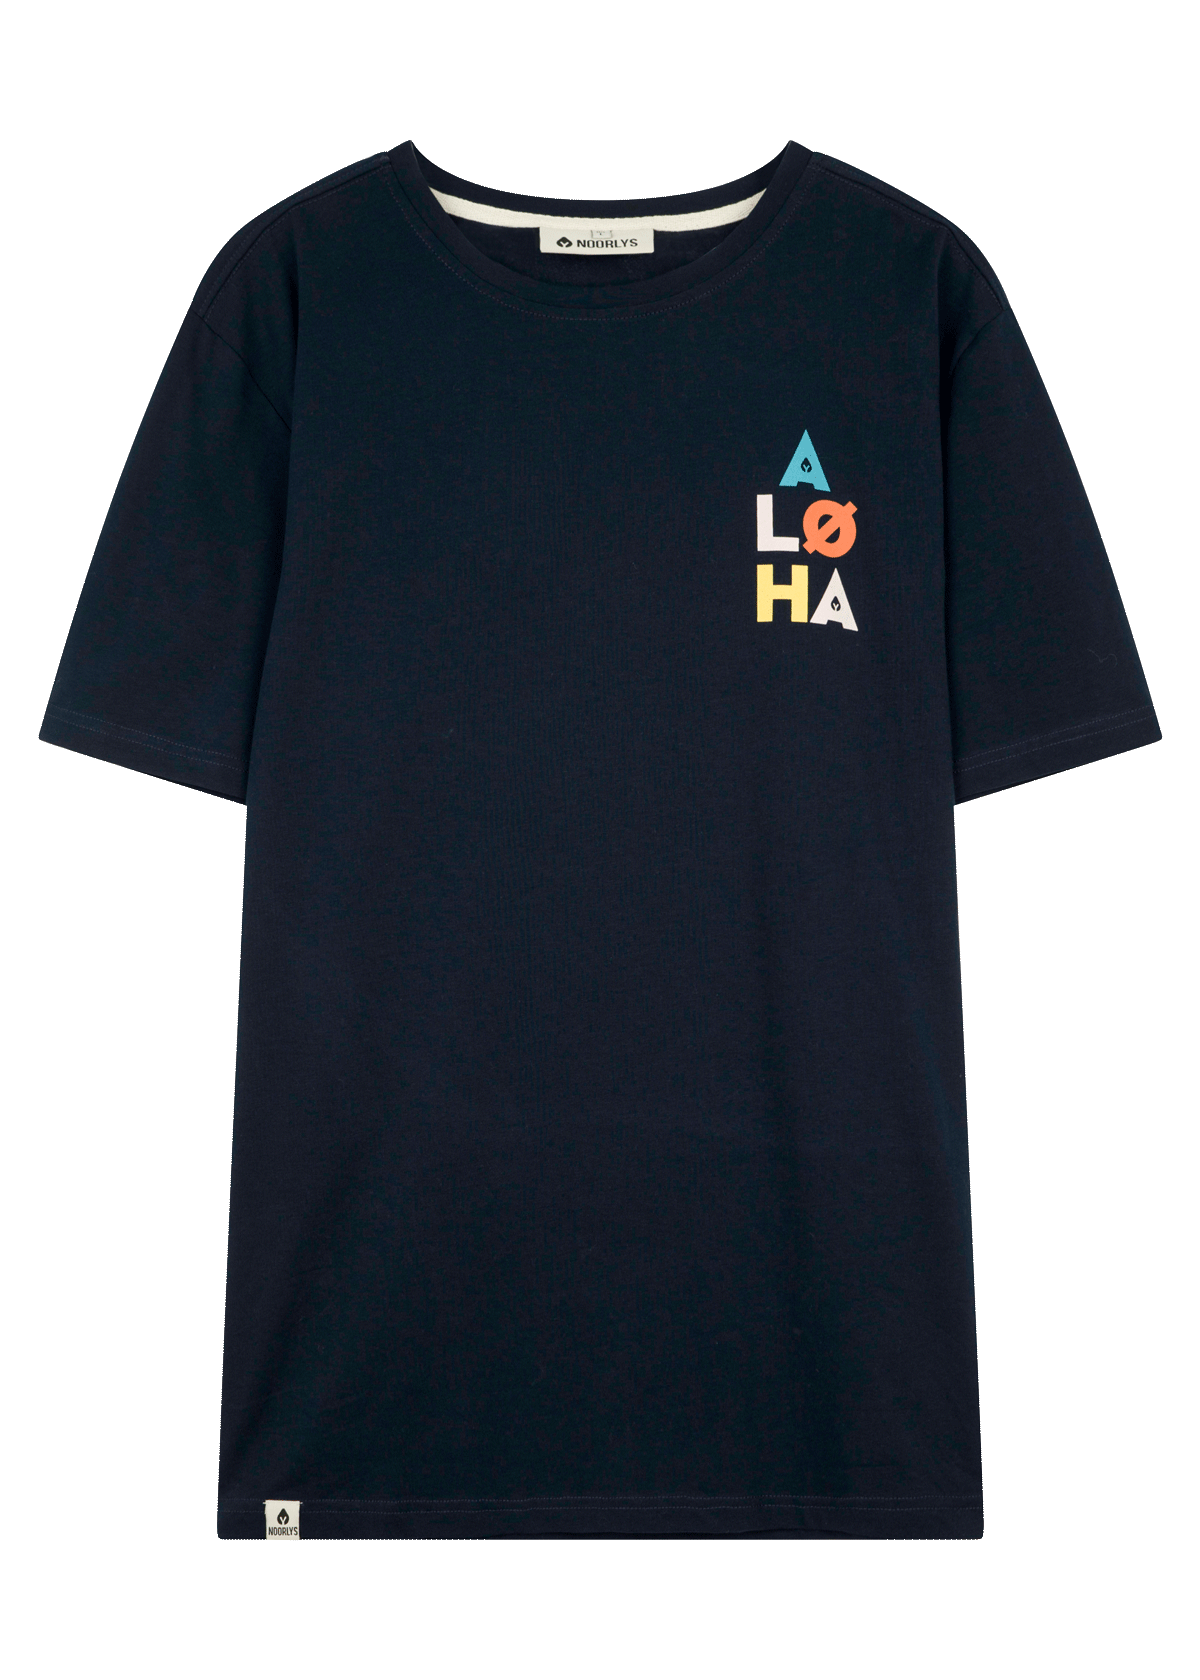 T-Shirt ALØHA Navy